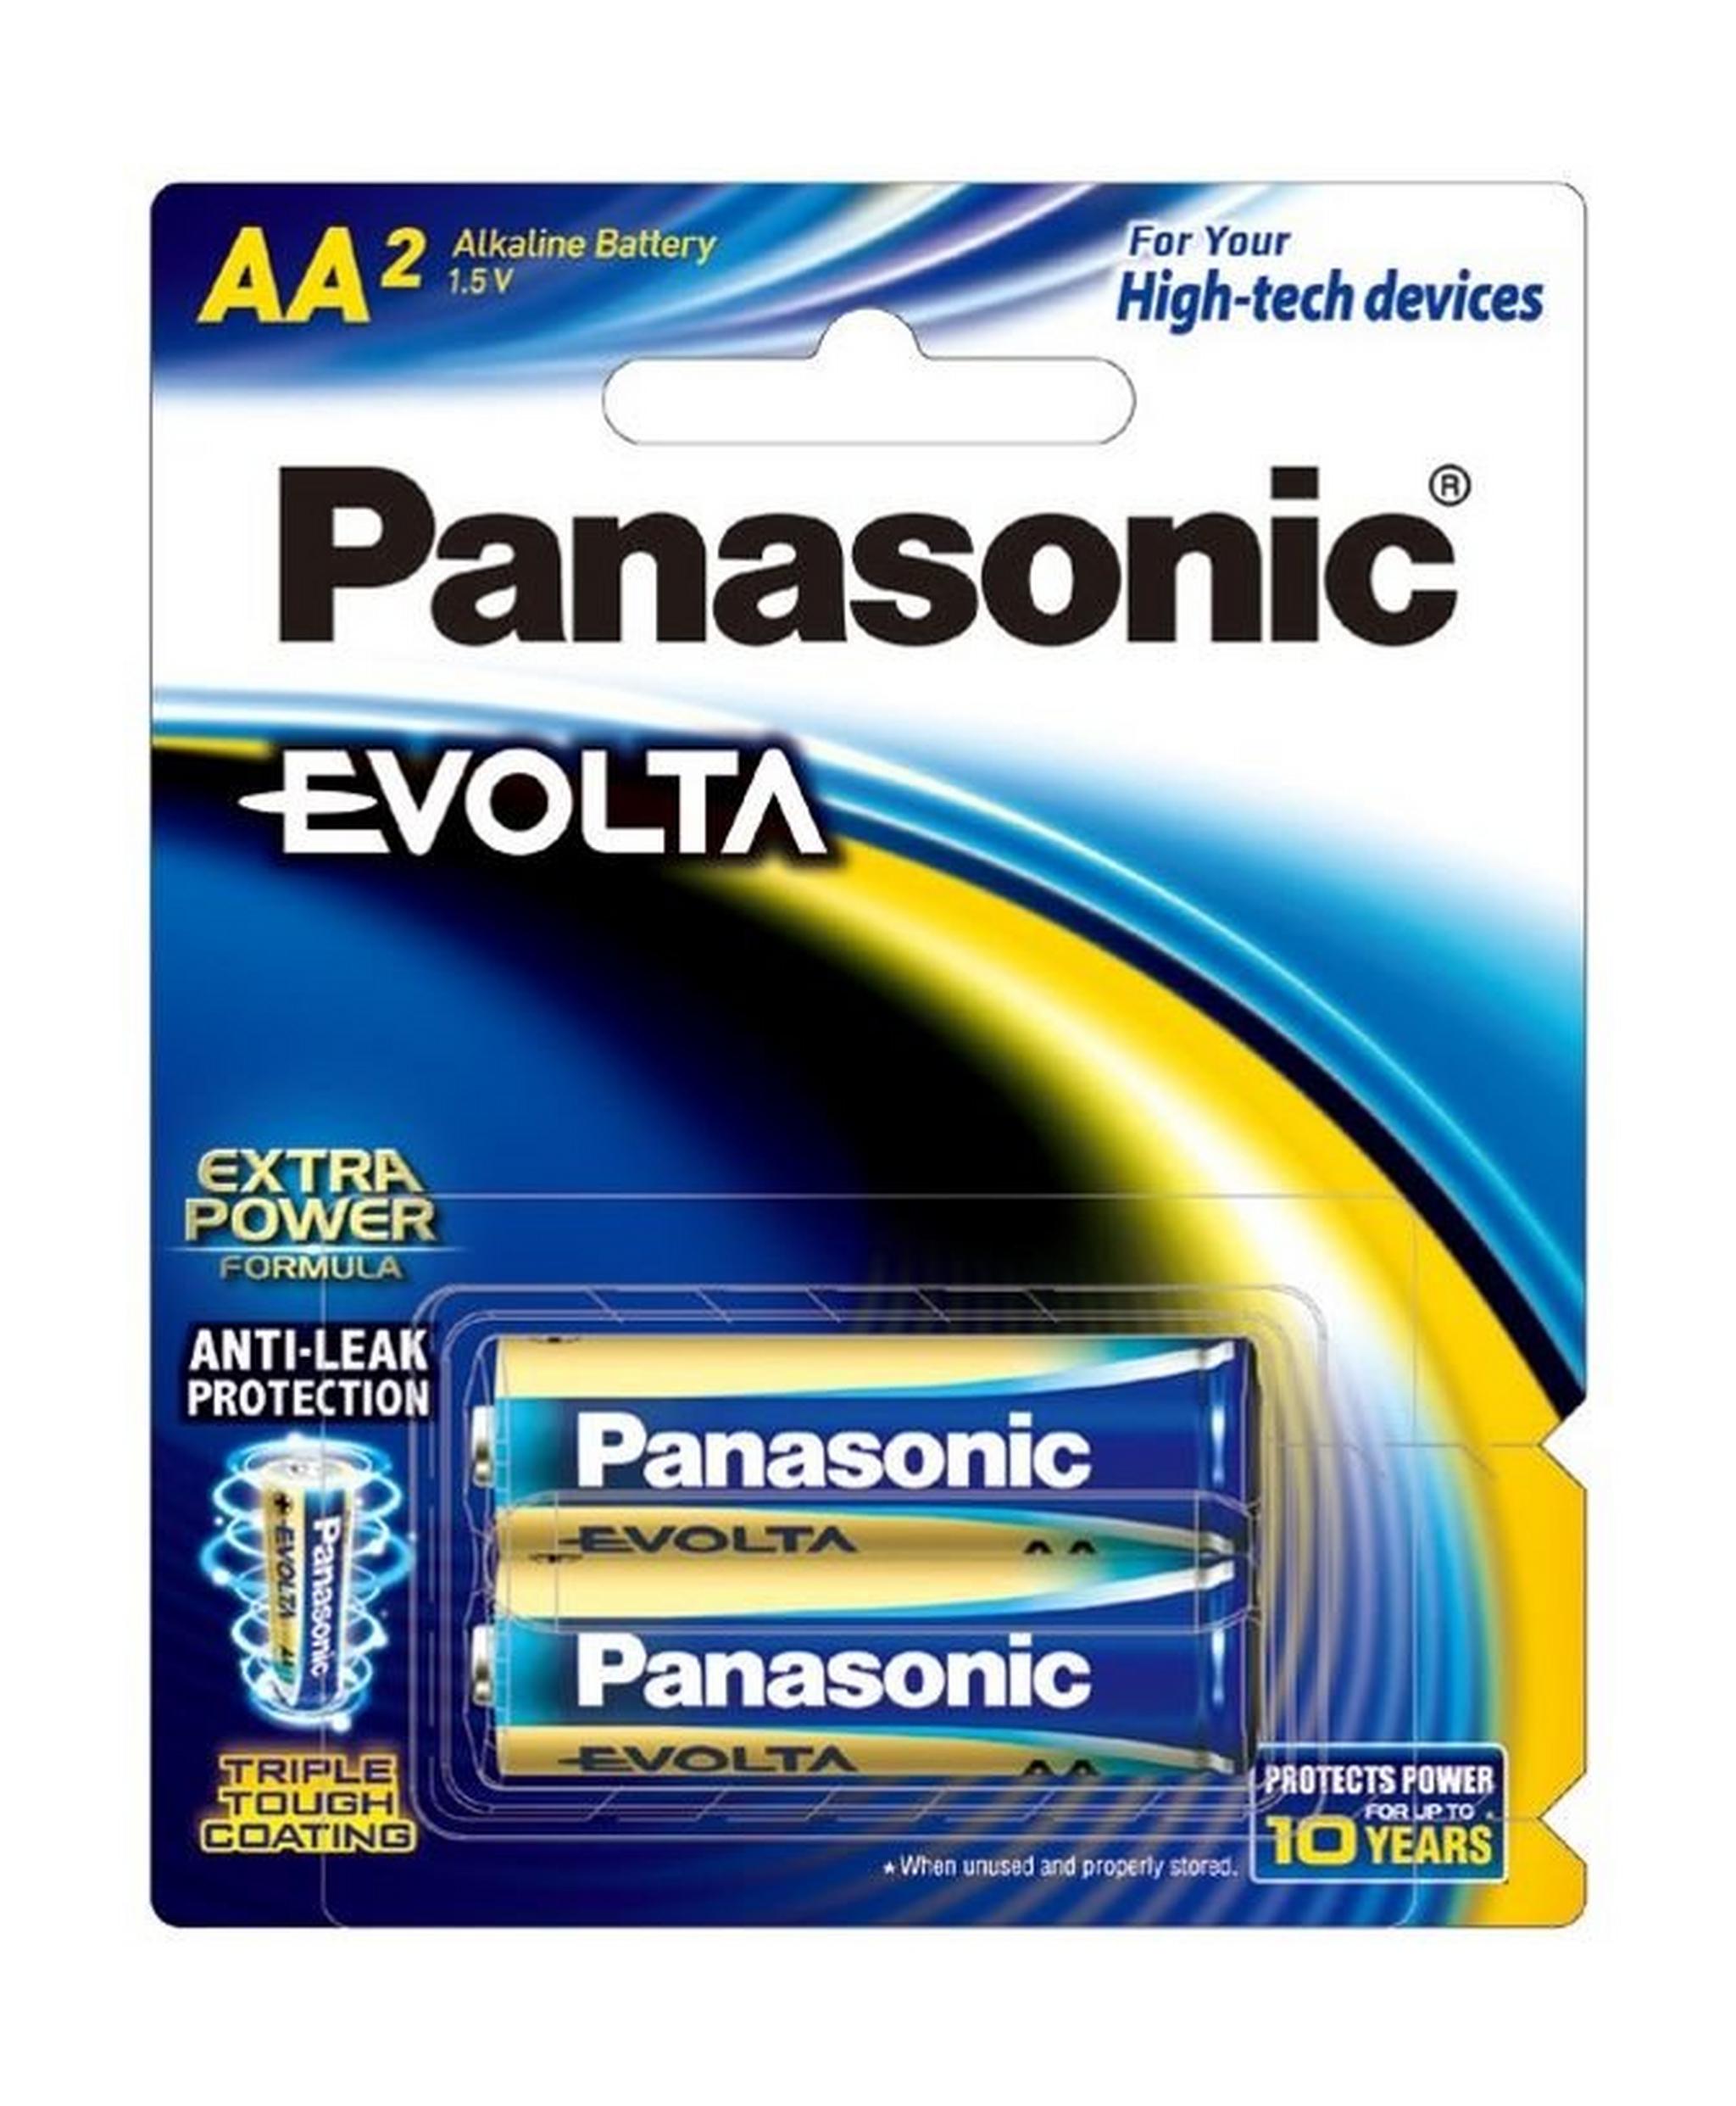 Panasonic Evolta AA Alkaline Battery - Pack of 2 (LR6EG/2B)